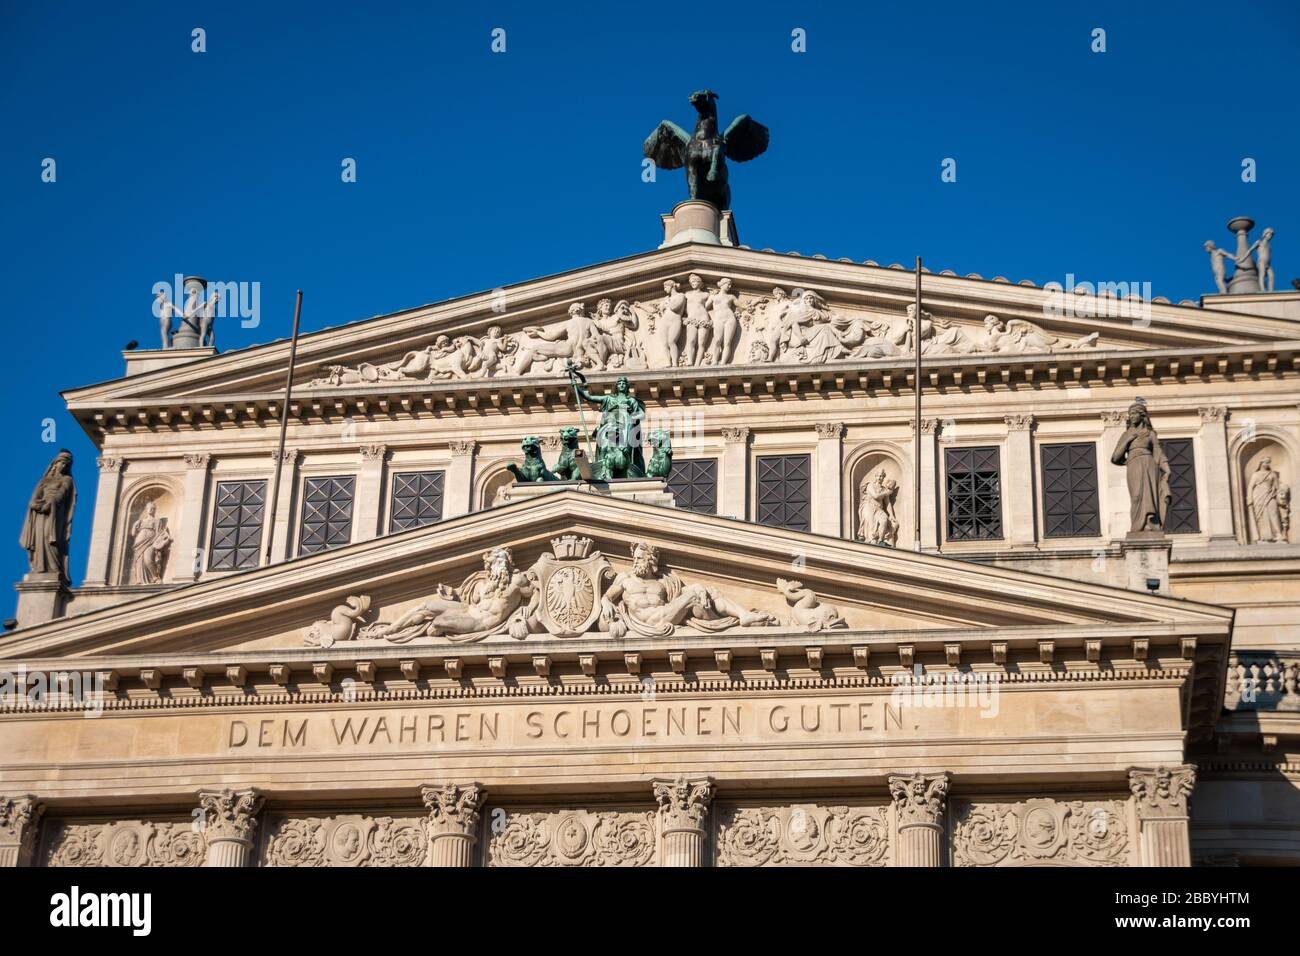 Façade de l'opéra „Alte Oper Frankfurt“ (ancien opéra) avec inscription „dem wahren schönen guten“, traduite en anglais dans le vrai beau bien) Banque D'Images